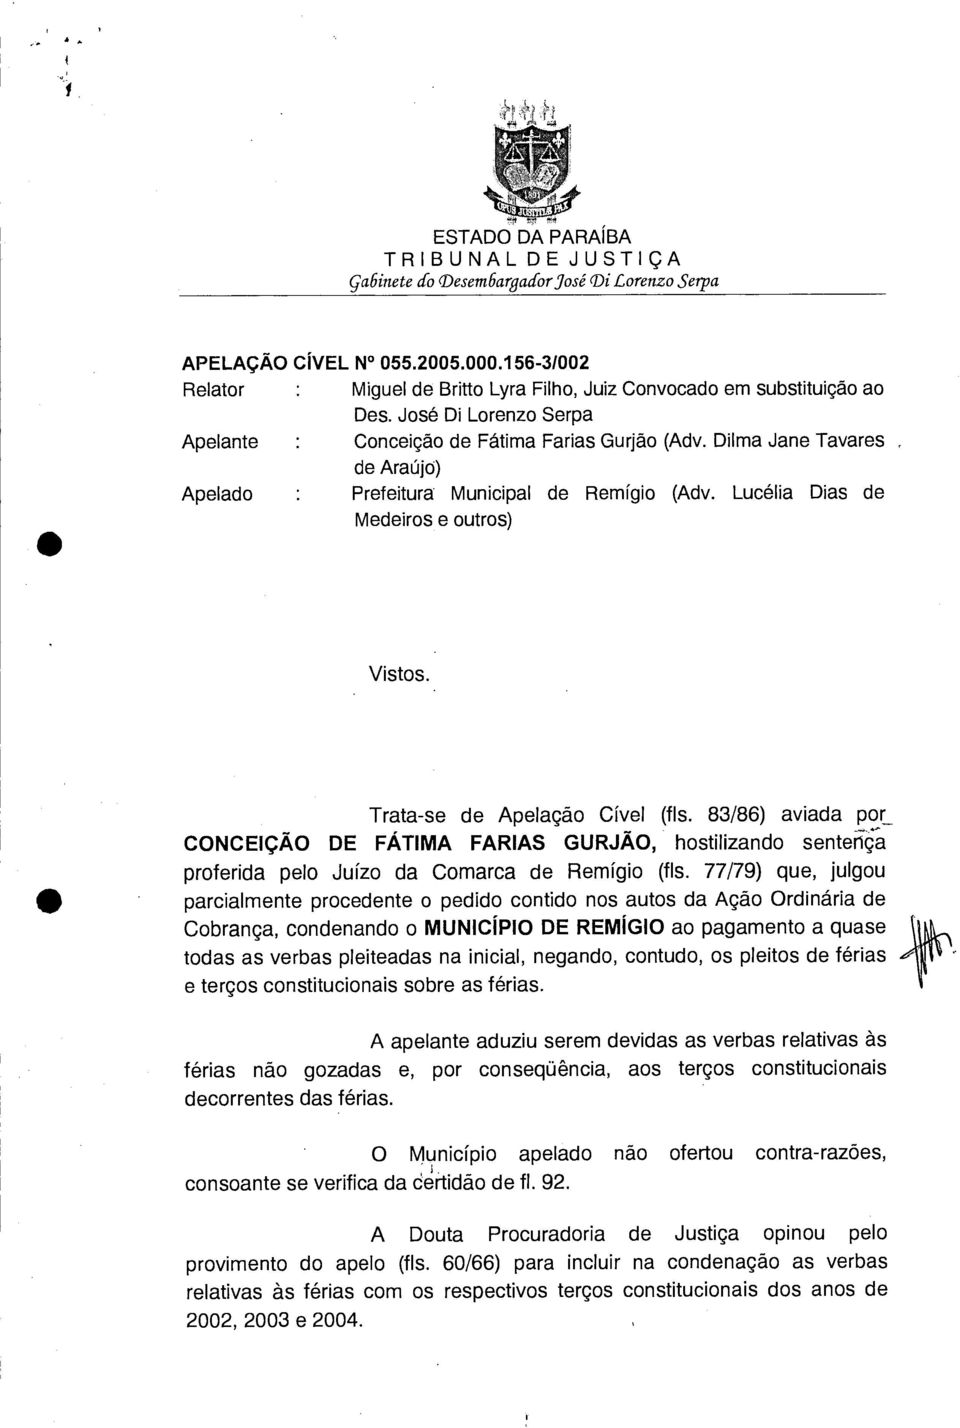 Trata-se de Apelação Cível (fls. 83/86) aviada por CONCEIÇÃO DE FÁTIMA FARIAS GURJÃO, hostilizando senteriç-a proferida pelo Juízo da Comarca de Remígio (fls.